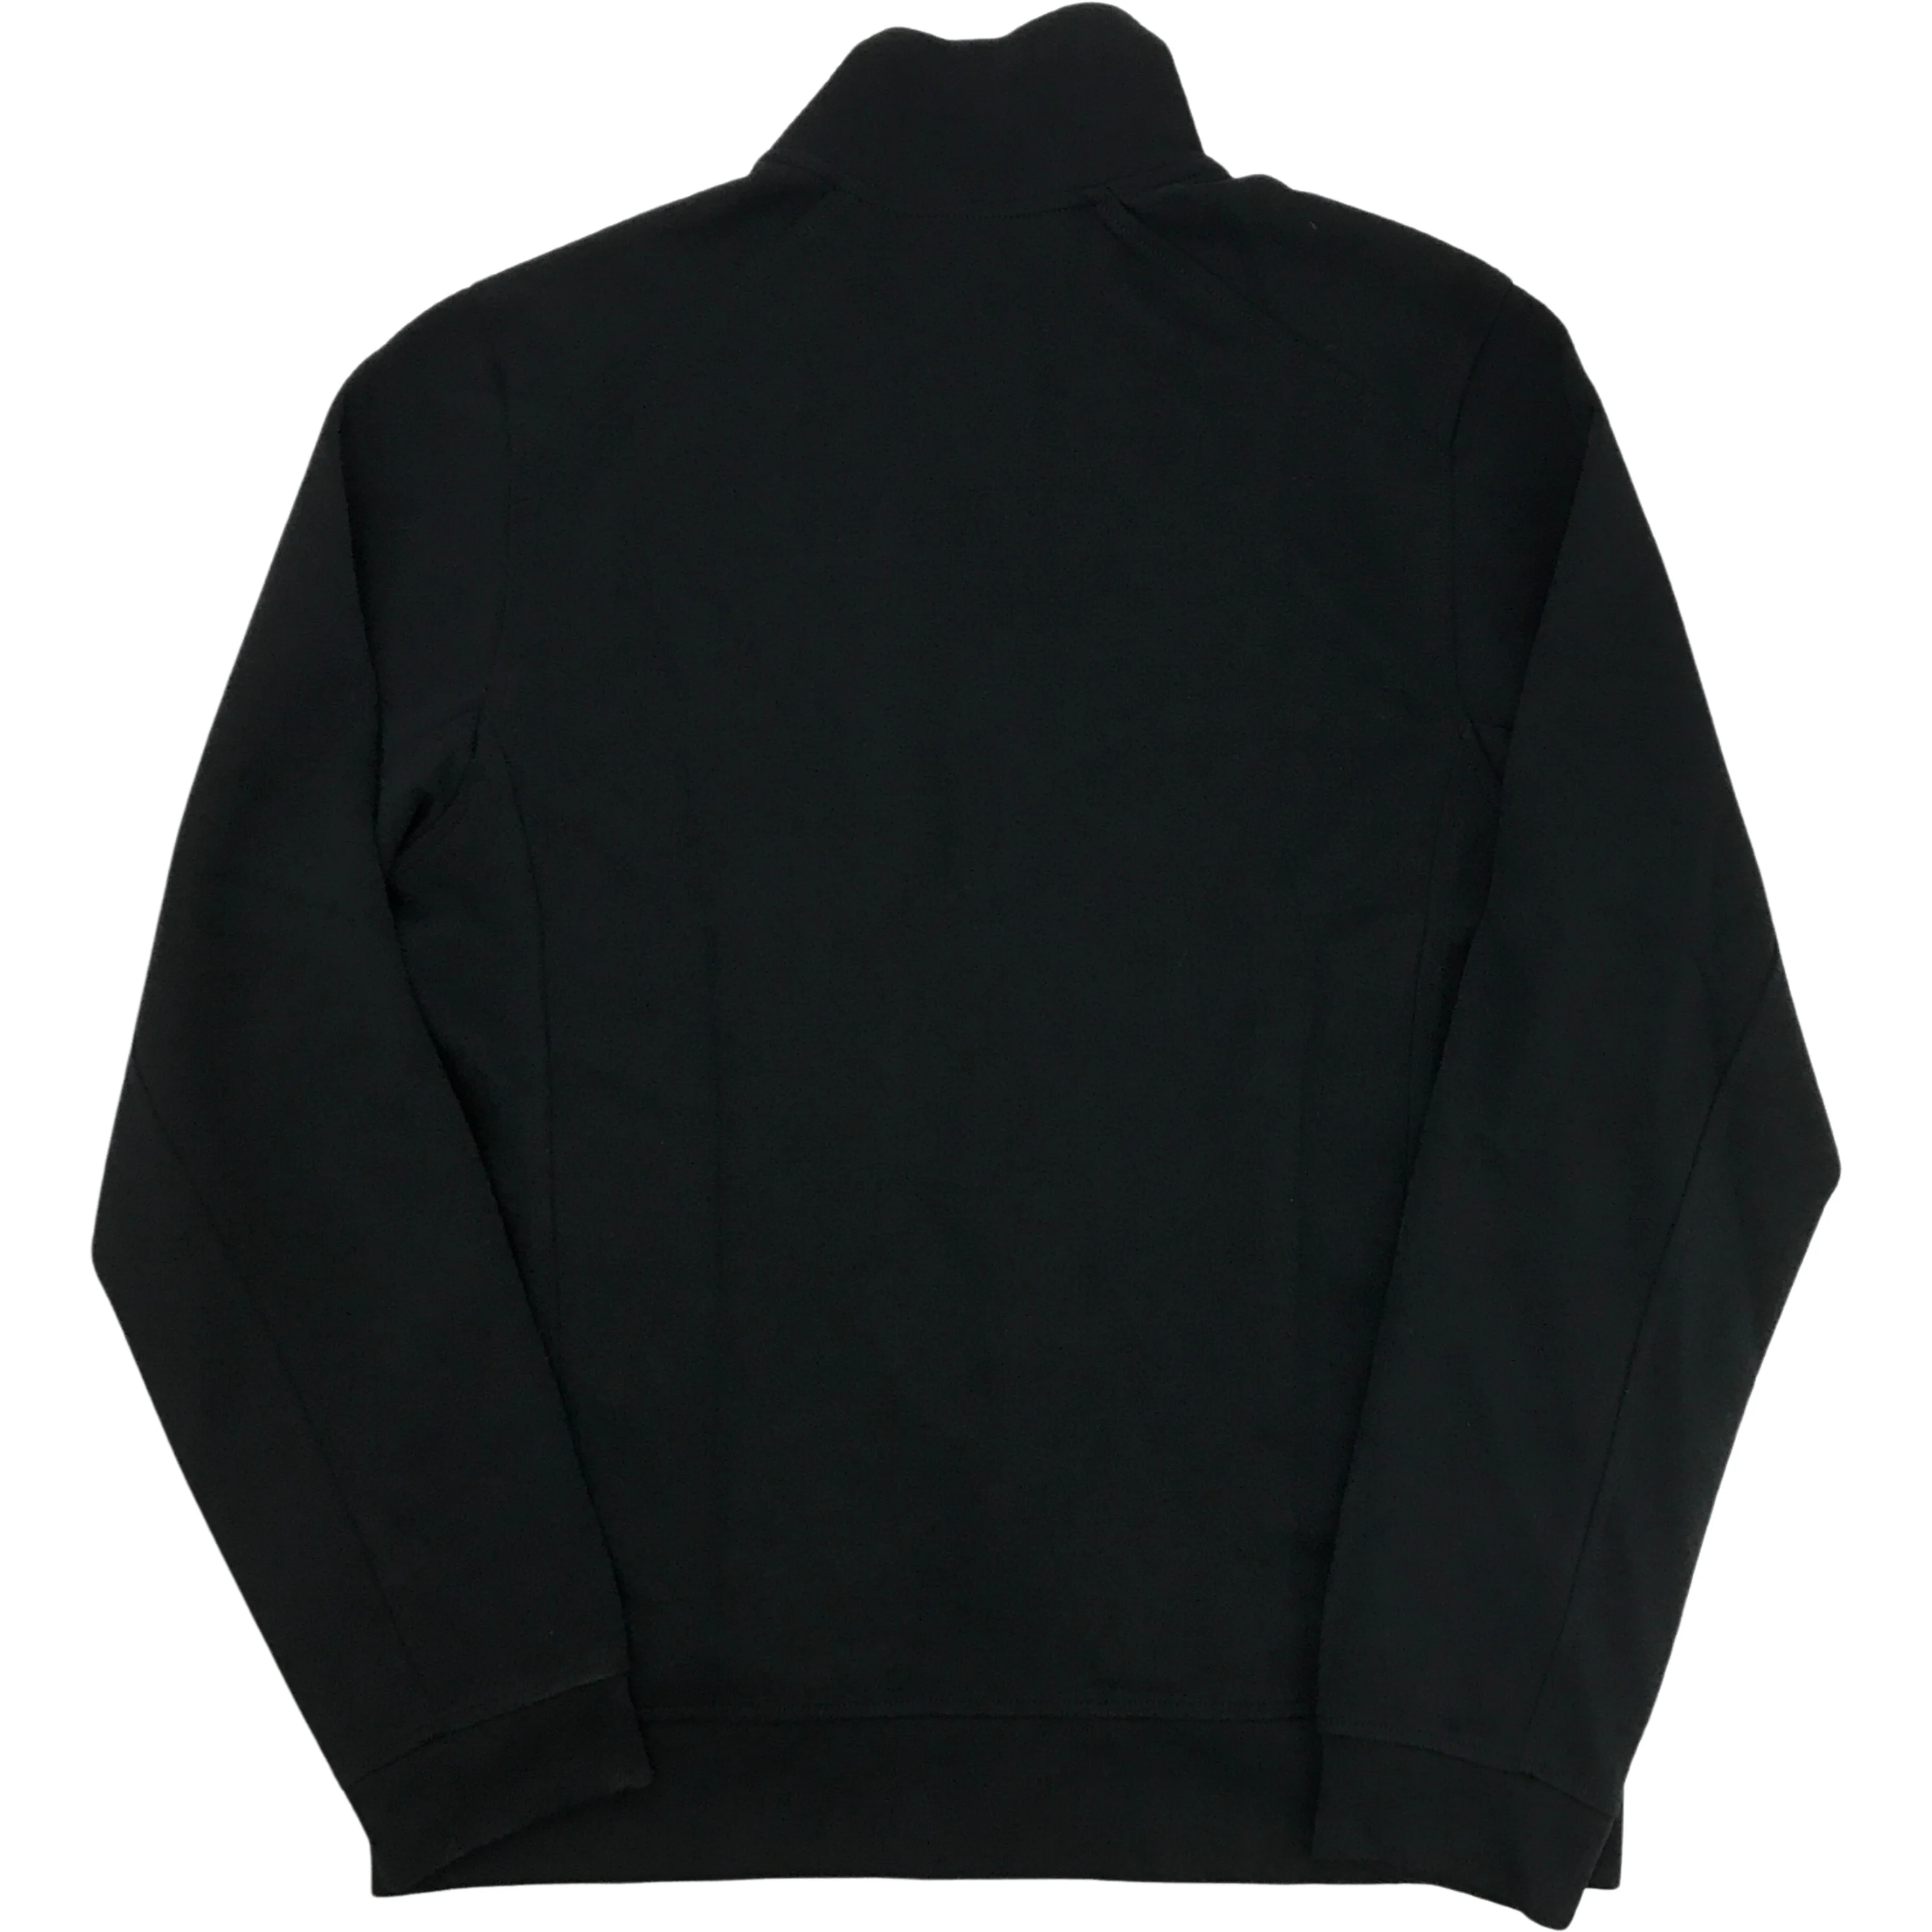 Karbon Men's Zip Up Sweater:  Black / Sweater / Small